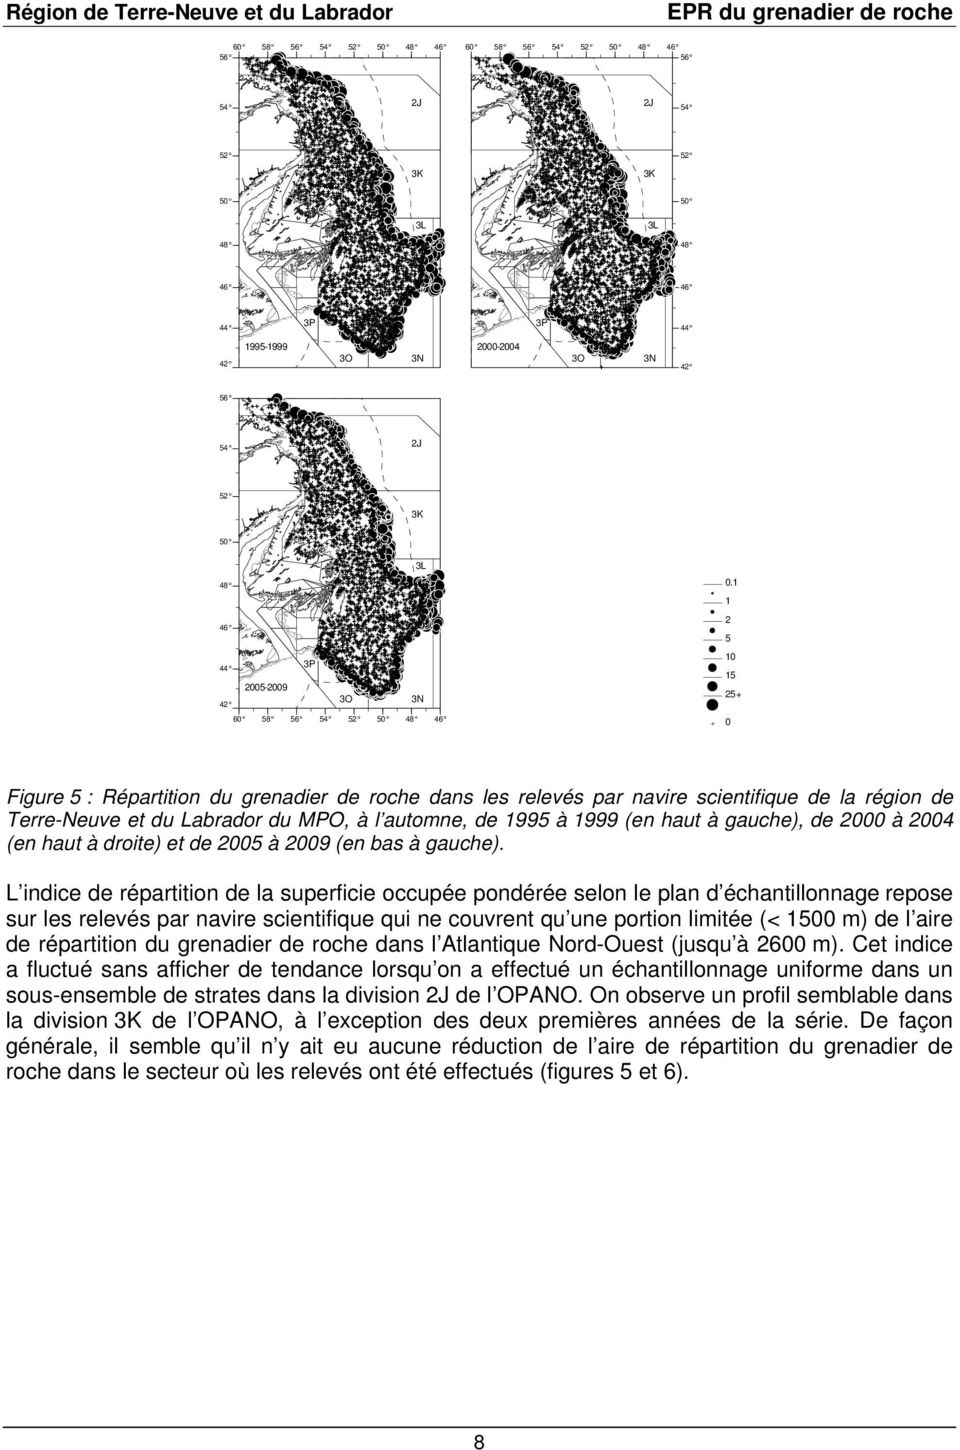 1 1 2 5 10 15 25+ 0 Figure 5 : Répartition du grenadier de roche dans les relevés par navire scientifique de la région de Terre-Neuve et du Labrador du MPO, à l automne, de 1995 à 1999 (en haut à